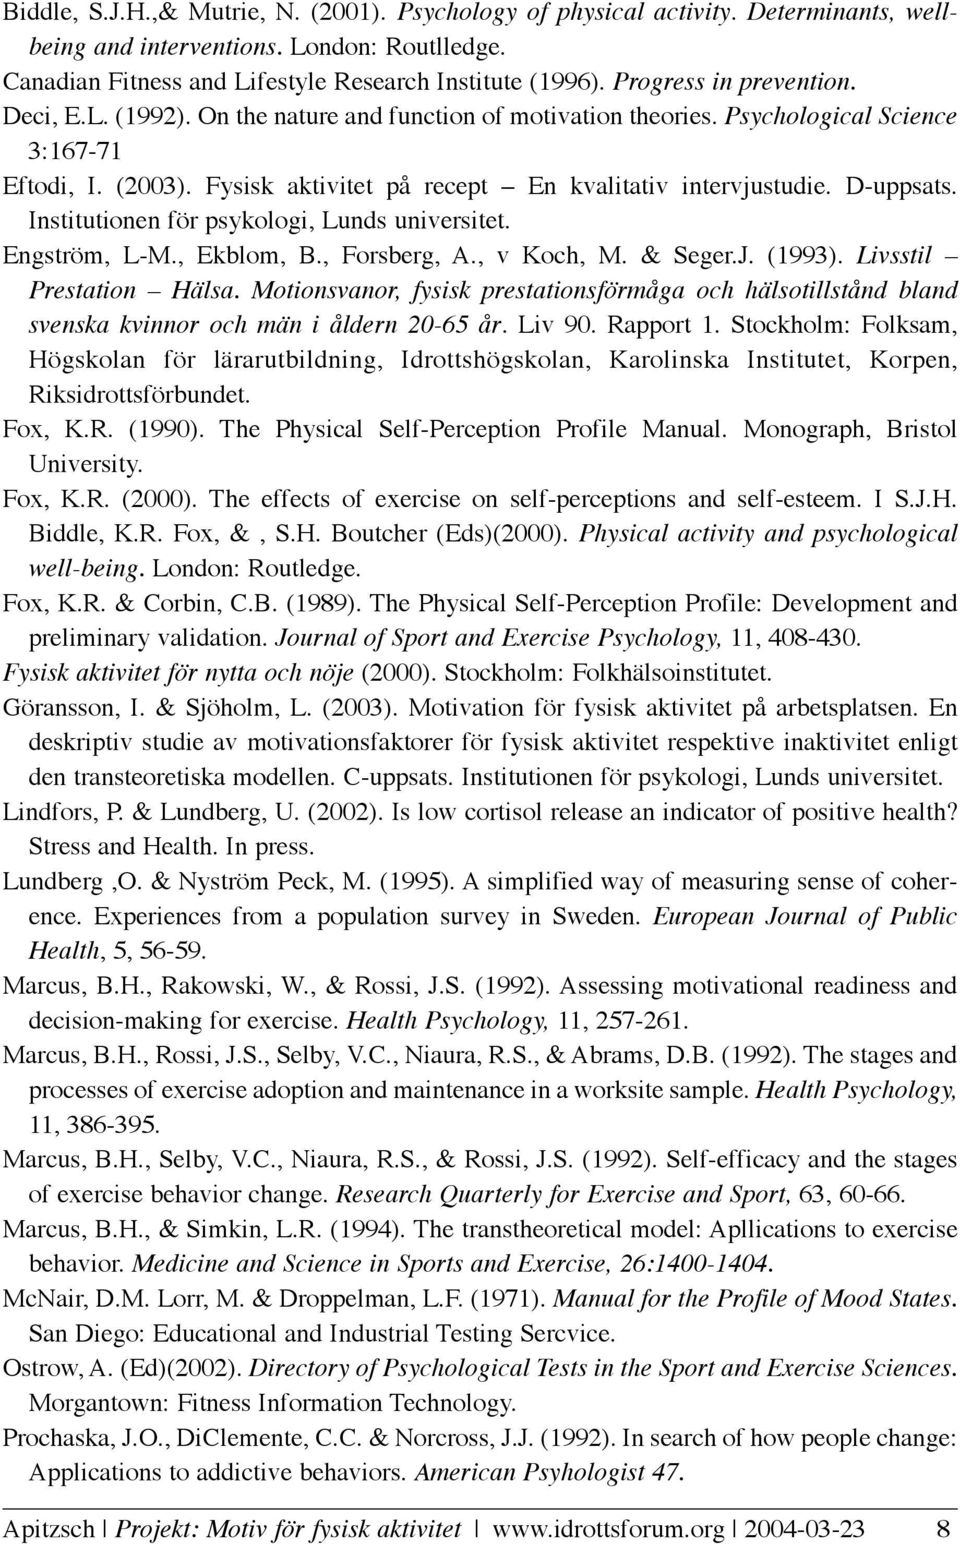 D-uppsats. Institutionen för psykologi, Lunds universitet. Engström, L-M., Ekblom, B., Forsberg, A., v Koch, M. & Seger.J. (1993). Livsstil Prestation Hälsa.